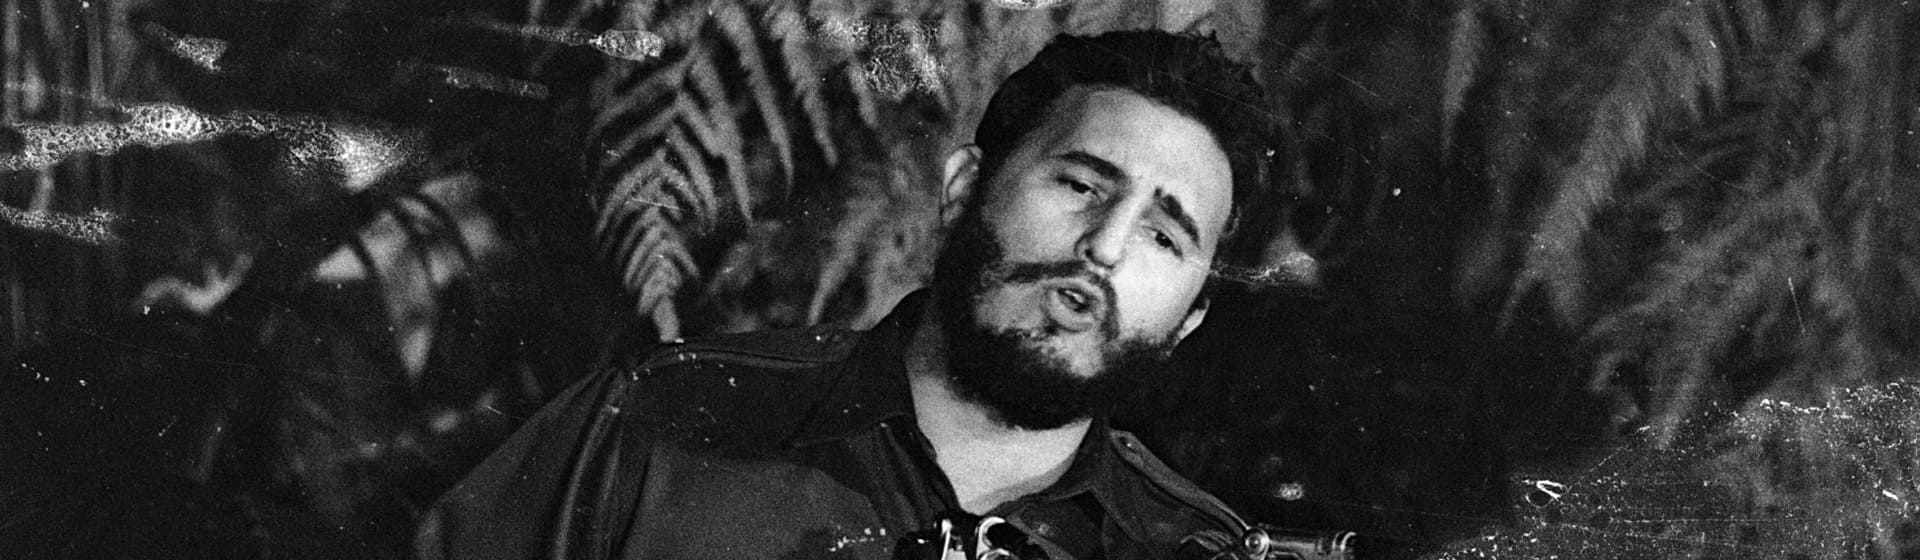 Фидель Кастро - Мерч и одежда с атрибутикой